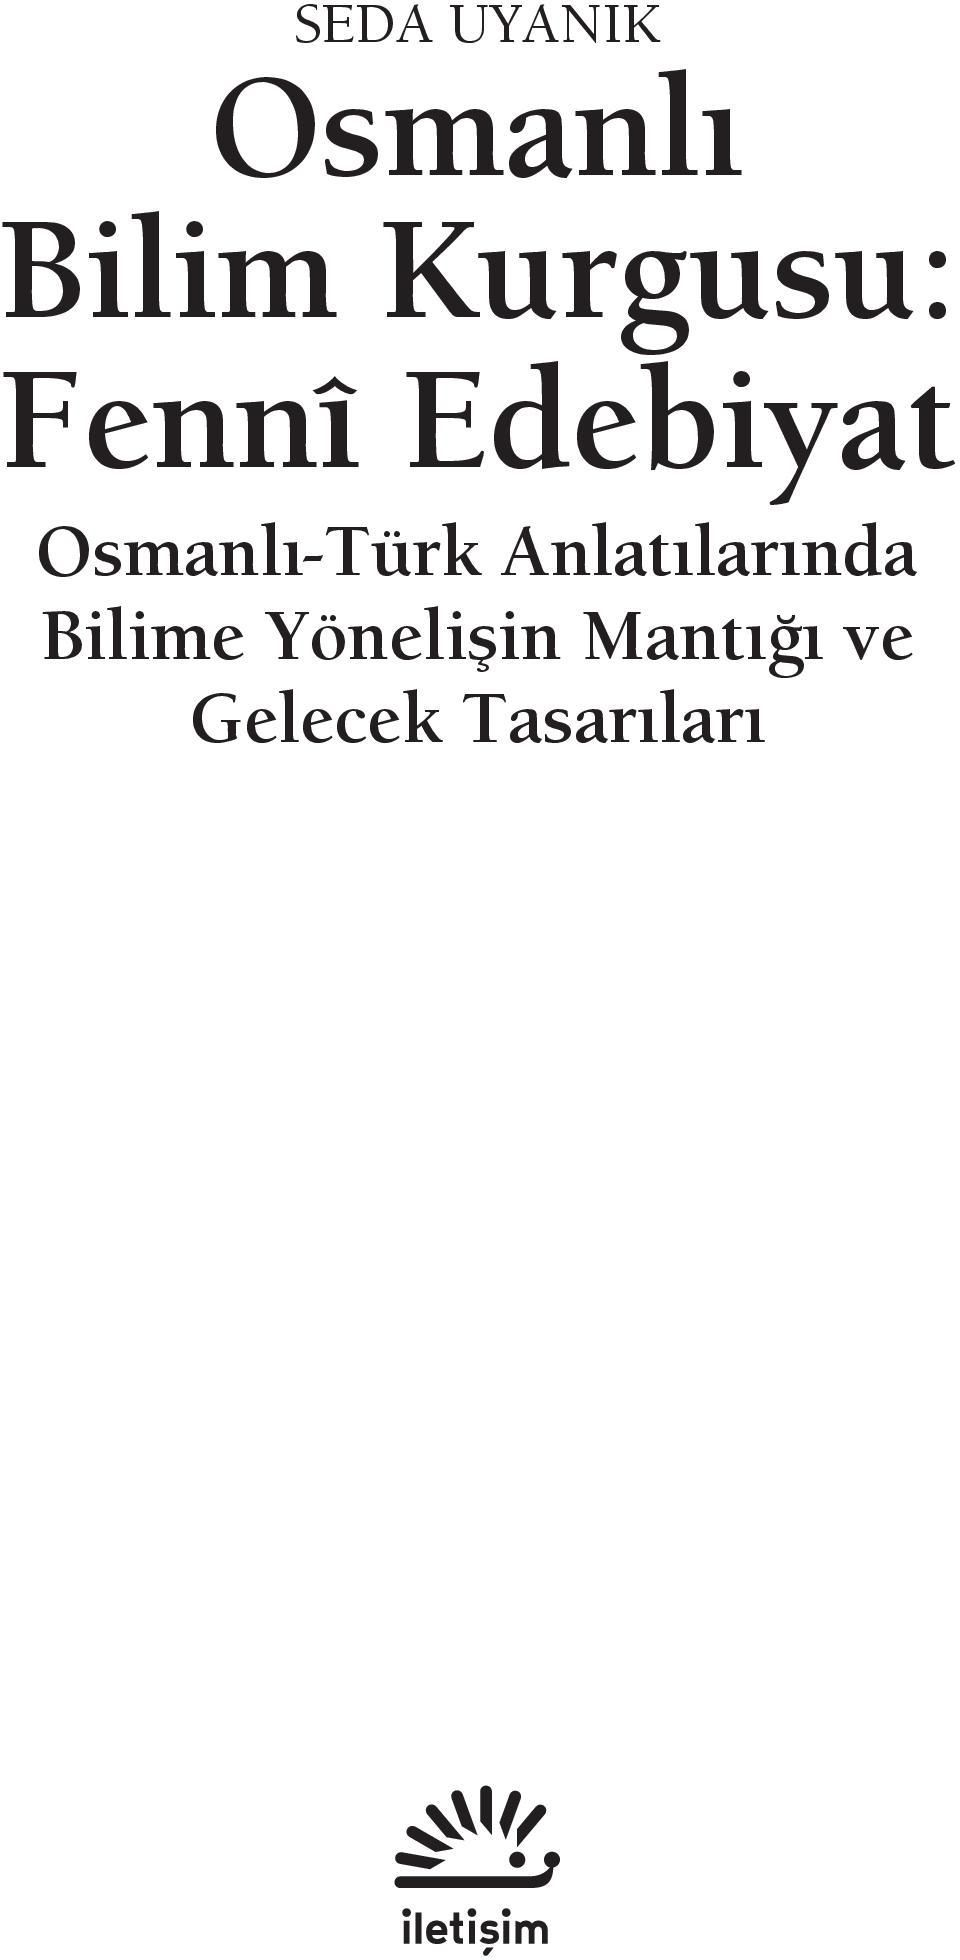 Osmanlı-Türk Anlatılarında